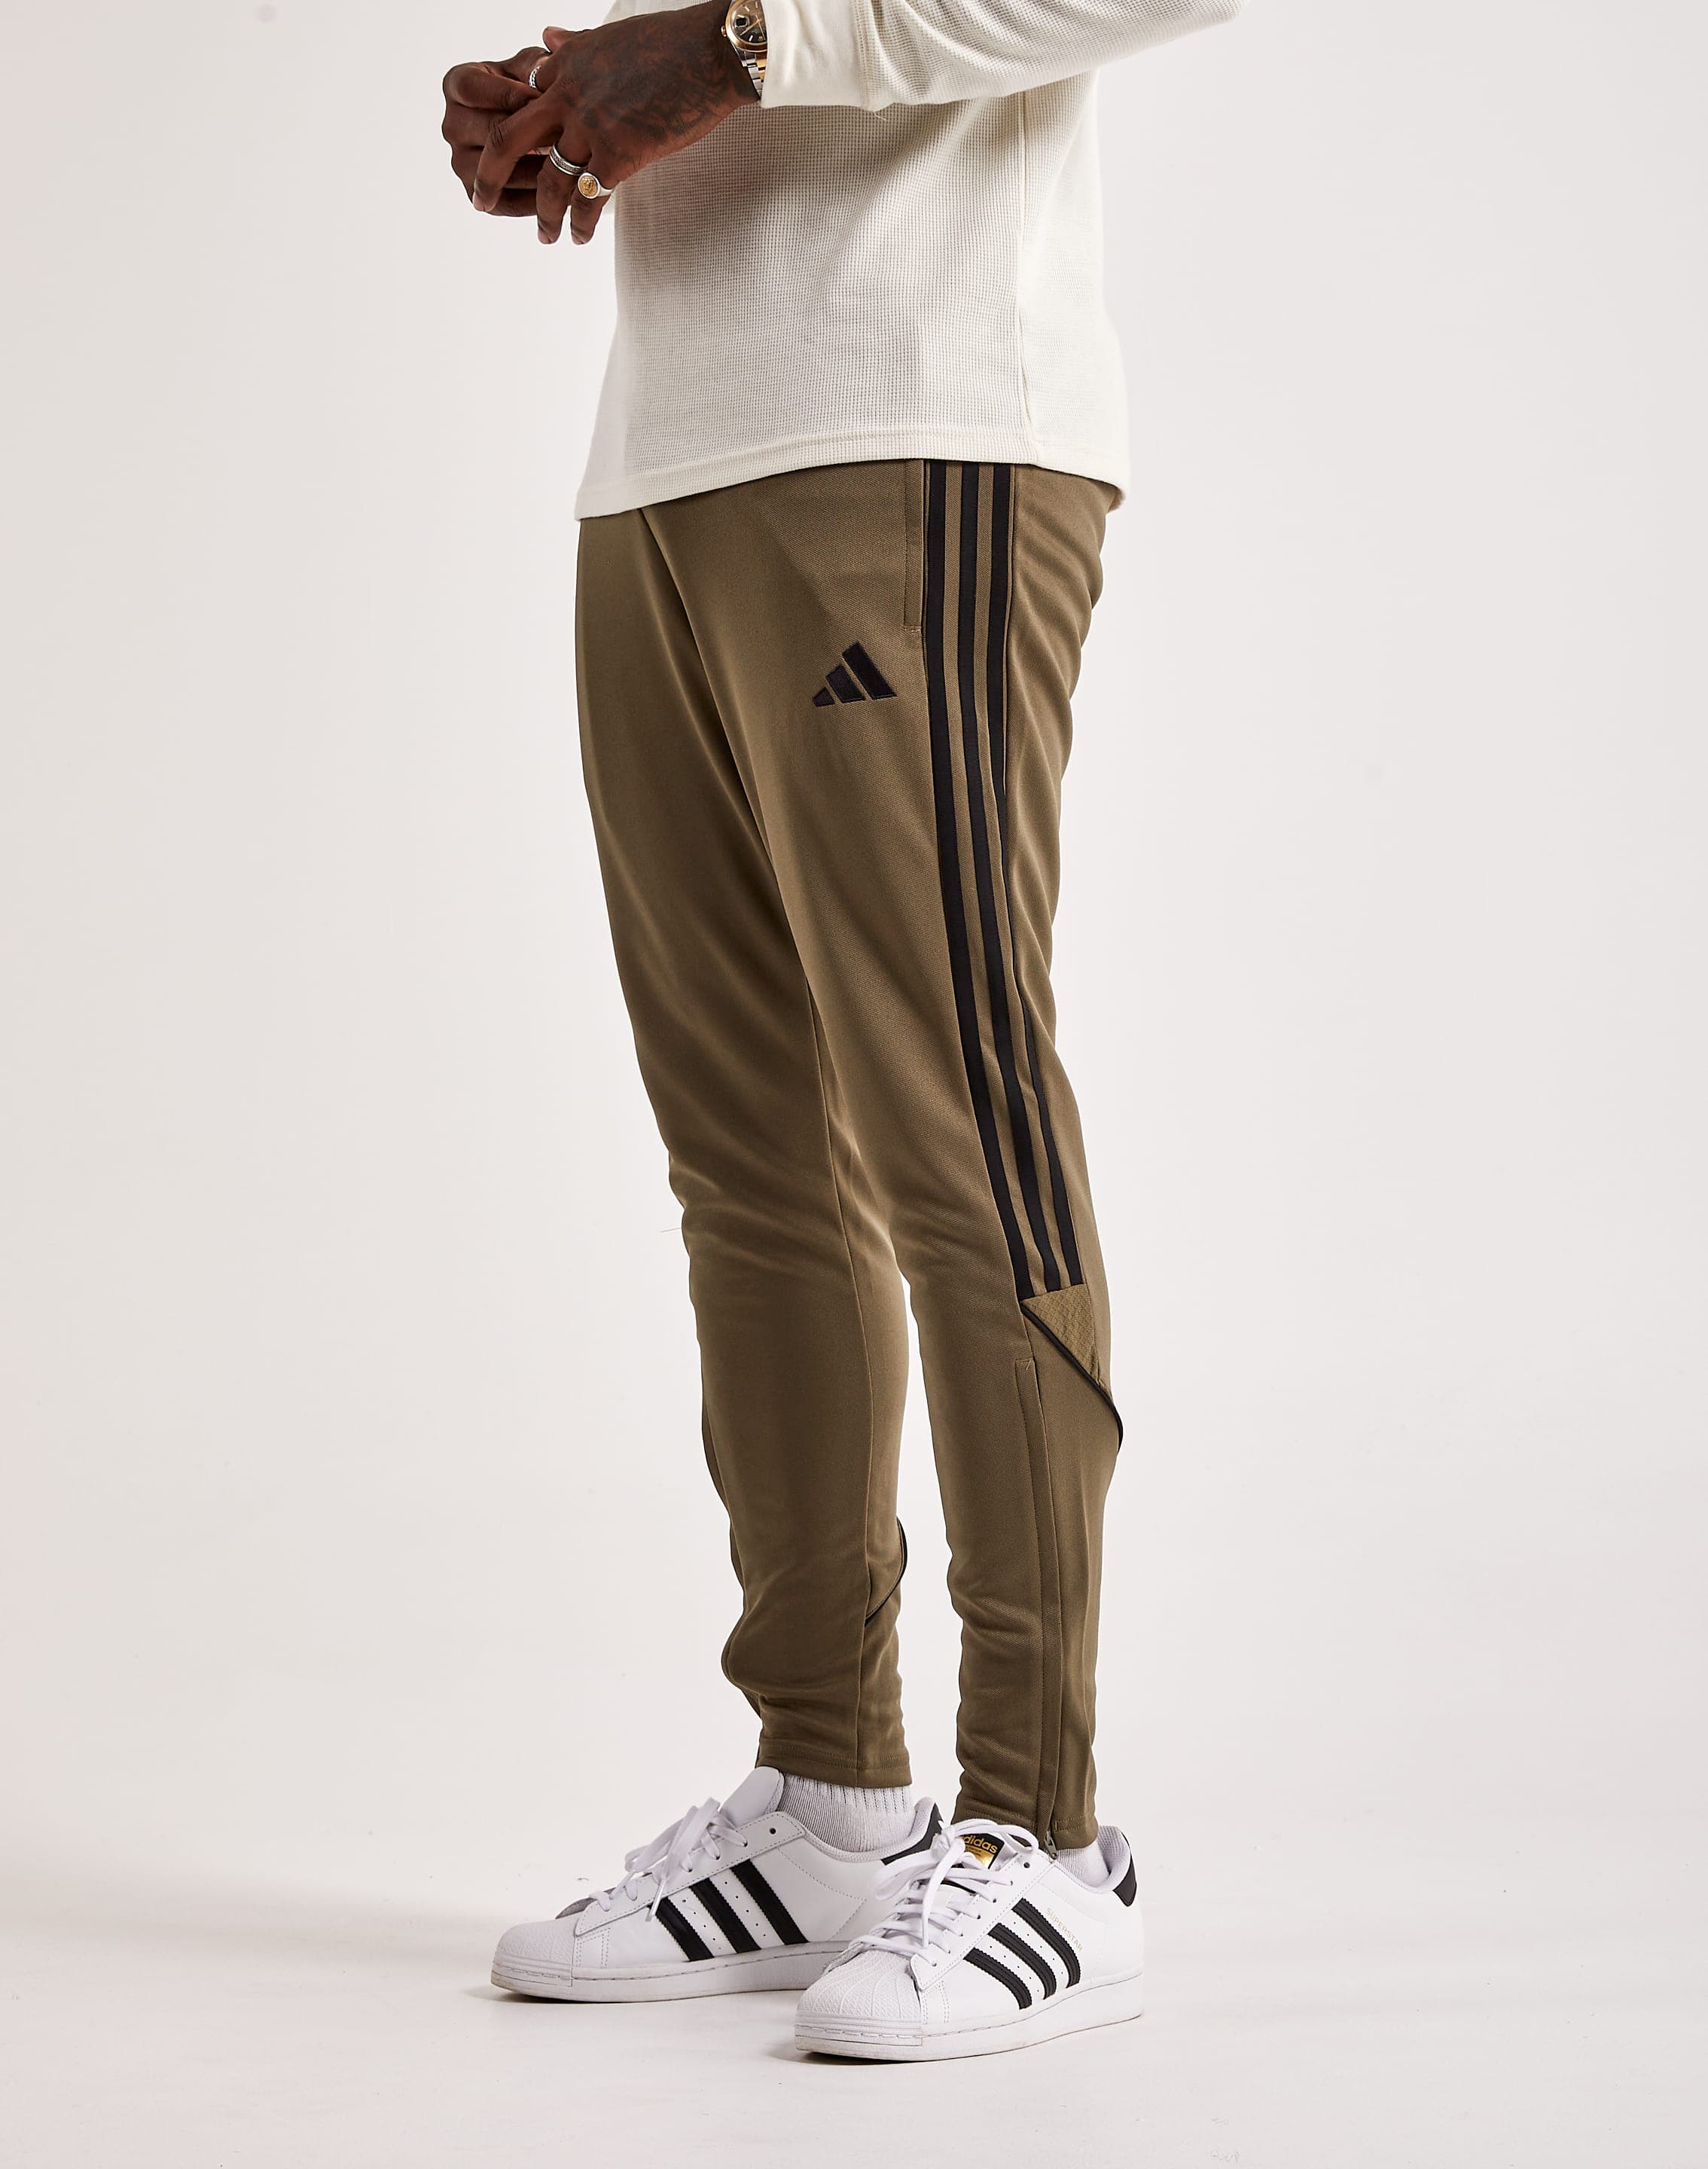 Adidas Tiro Pants – DTLR